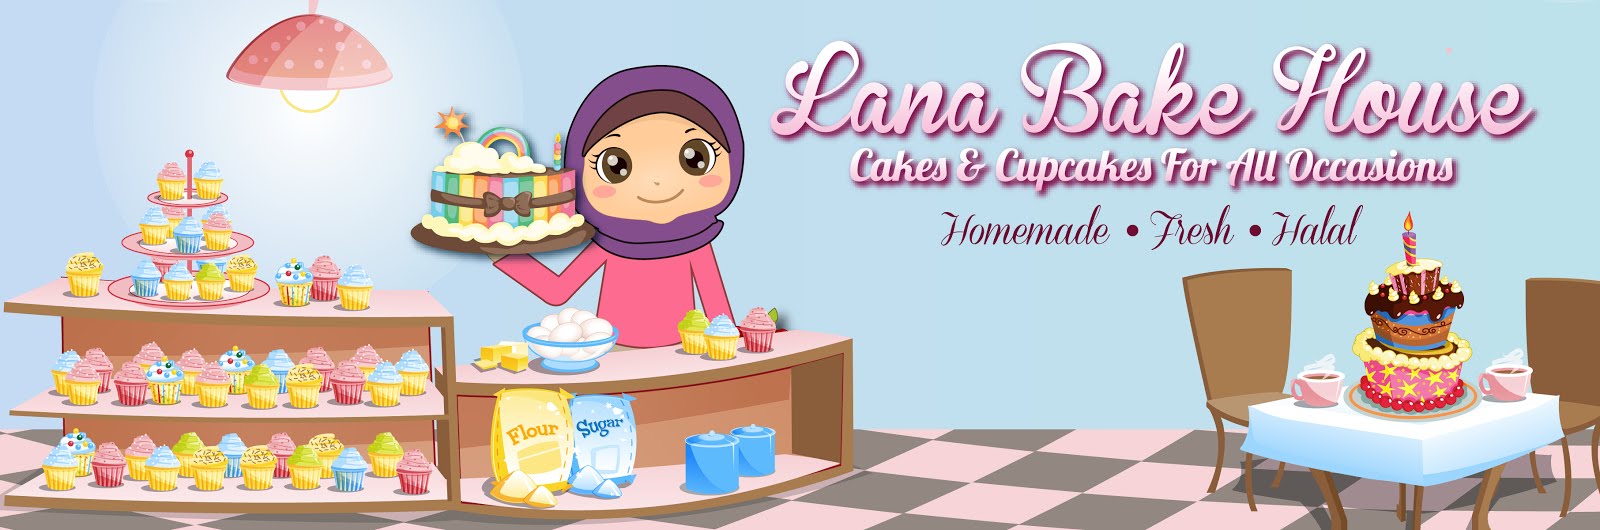 ~Lana Bake House~Penang~Halal~